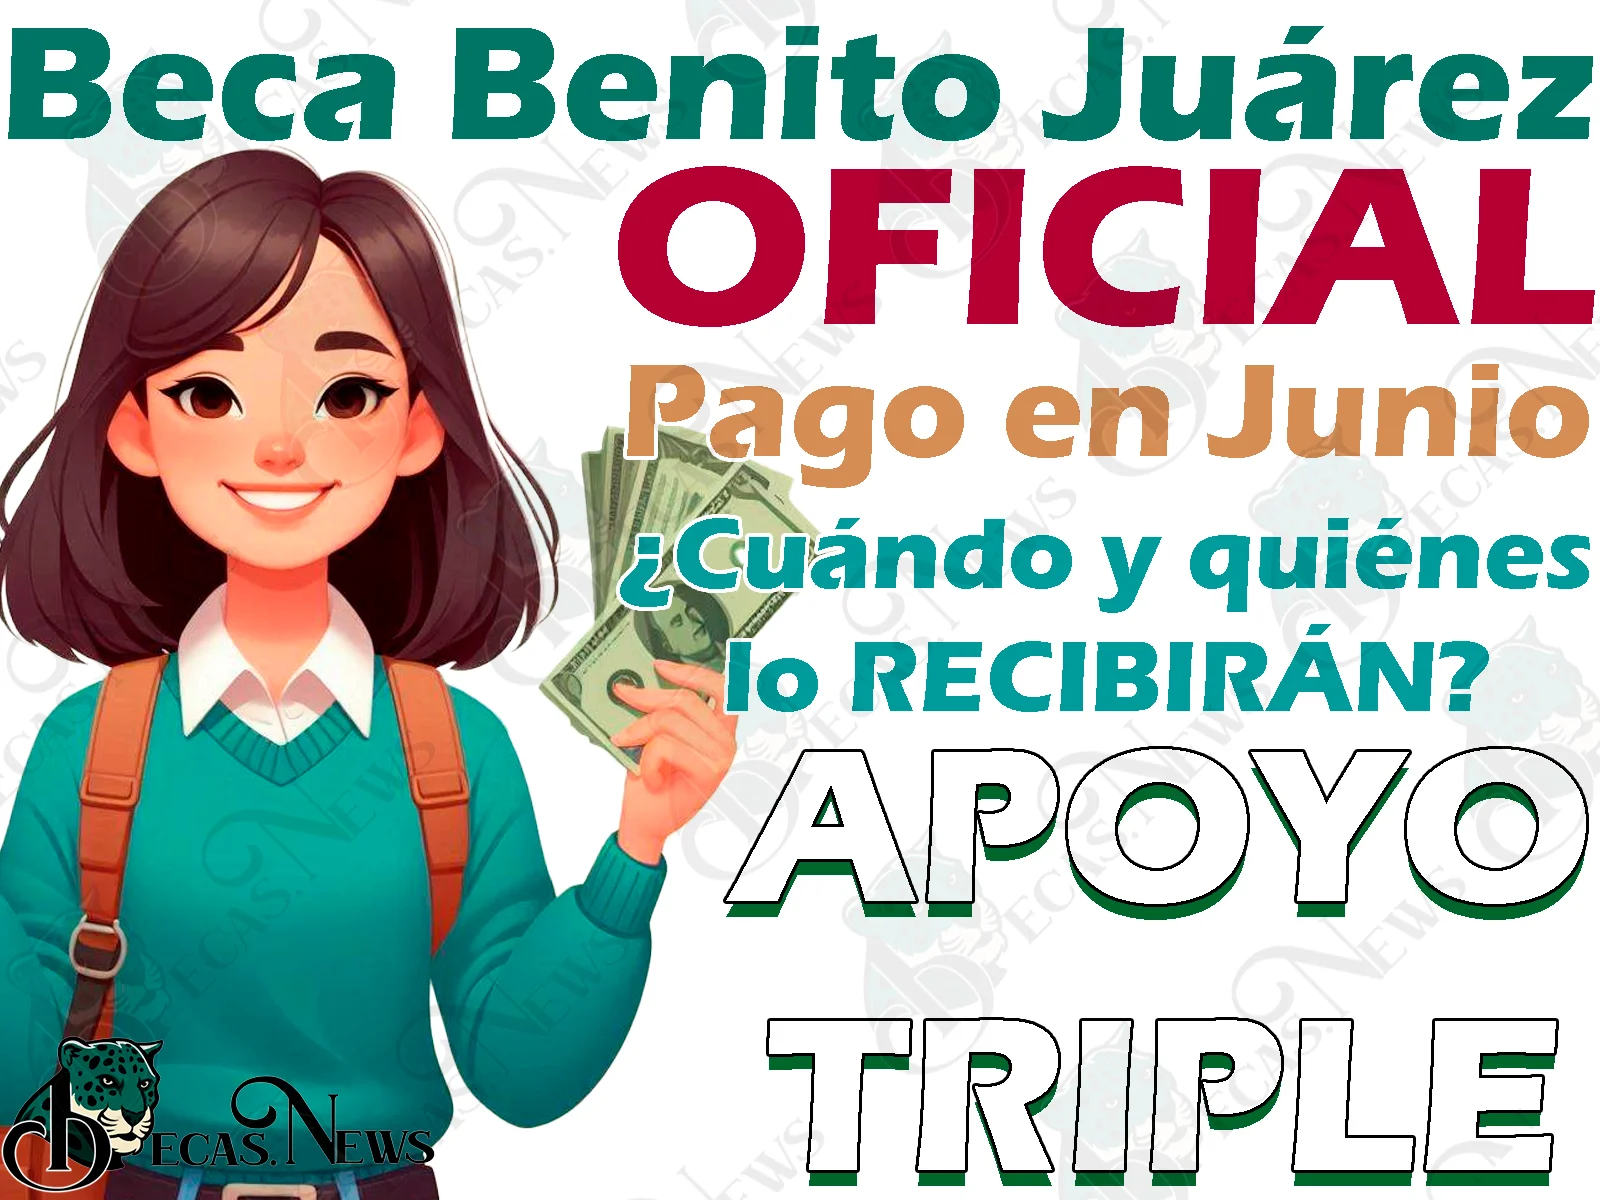 Coordinación de Becas CONFIRMA la entrega de Becas Benito Juárez en JUNIO. ¿Quiénes cobrarán en este mes?